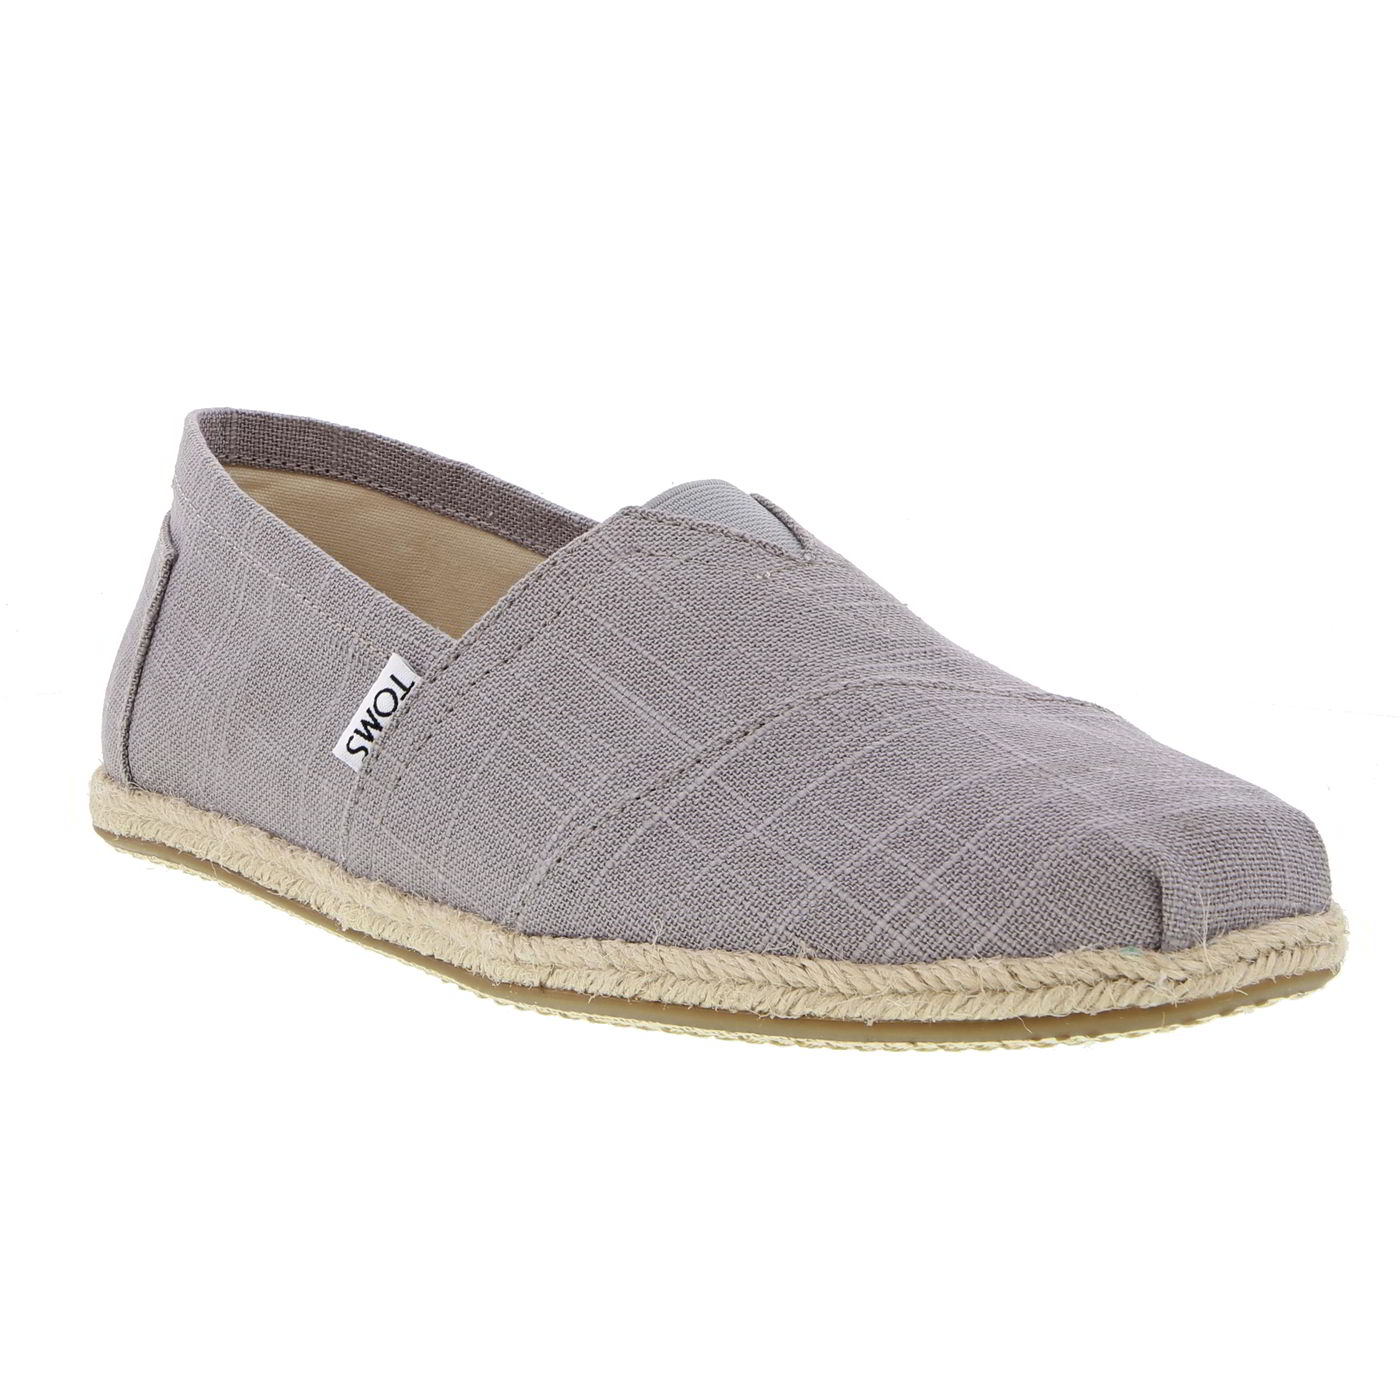 TOMS Toms Mens Classic Alpargata Espadrille Shoes - Grey Linen 2951